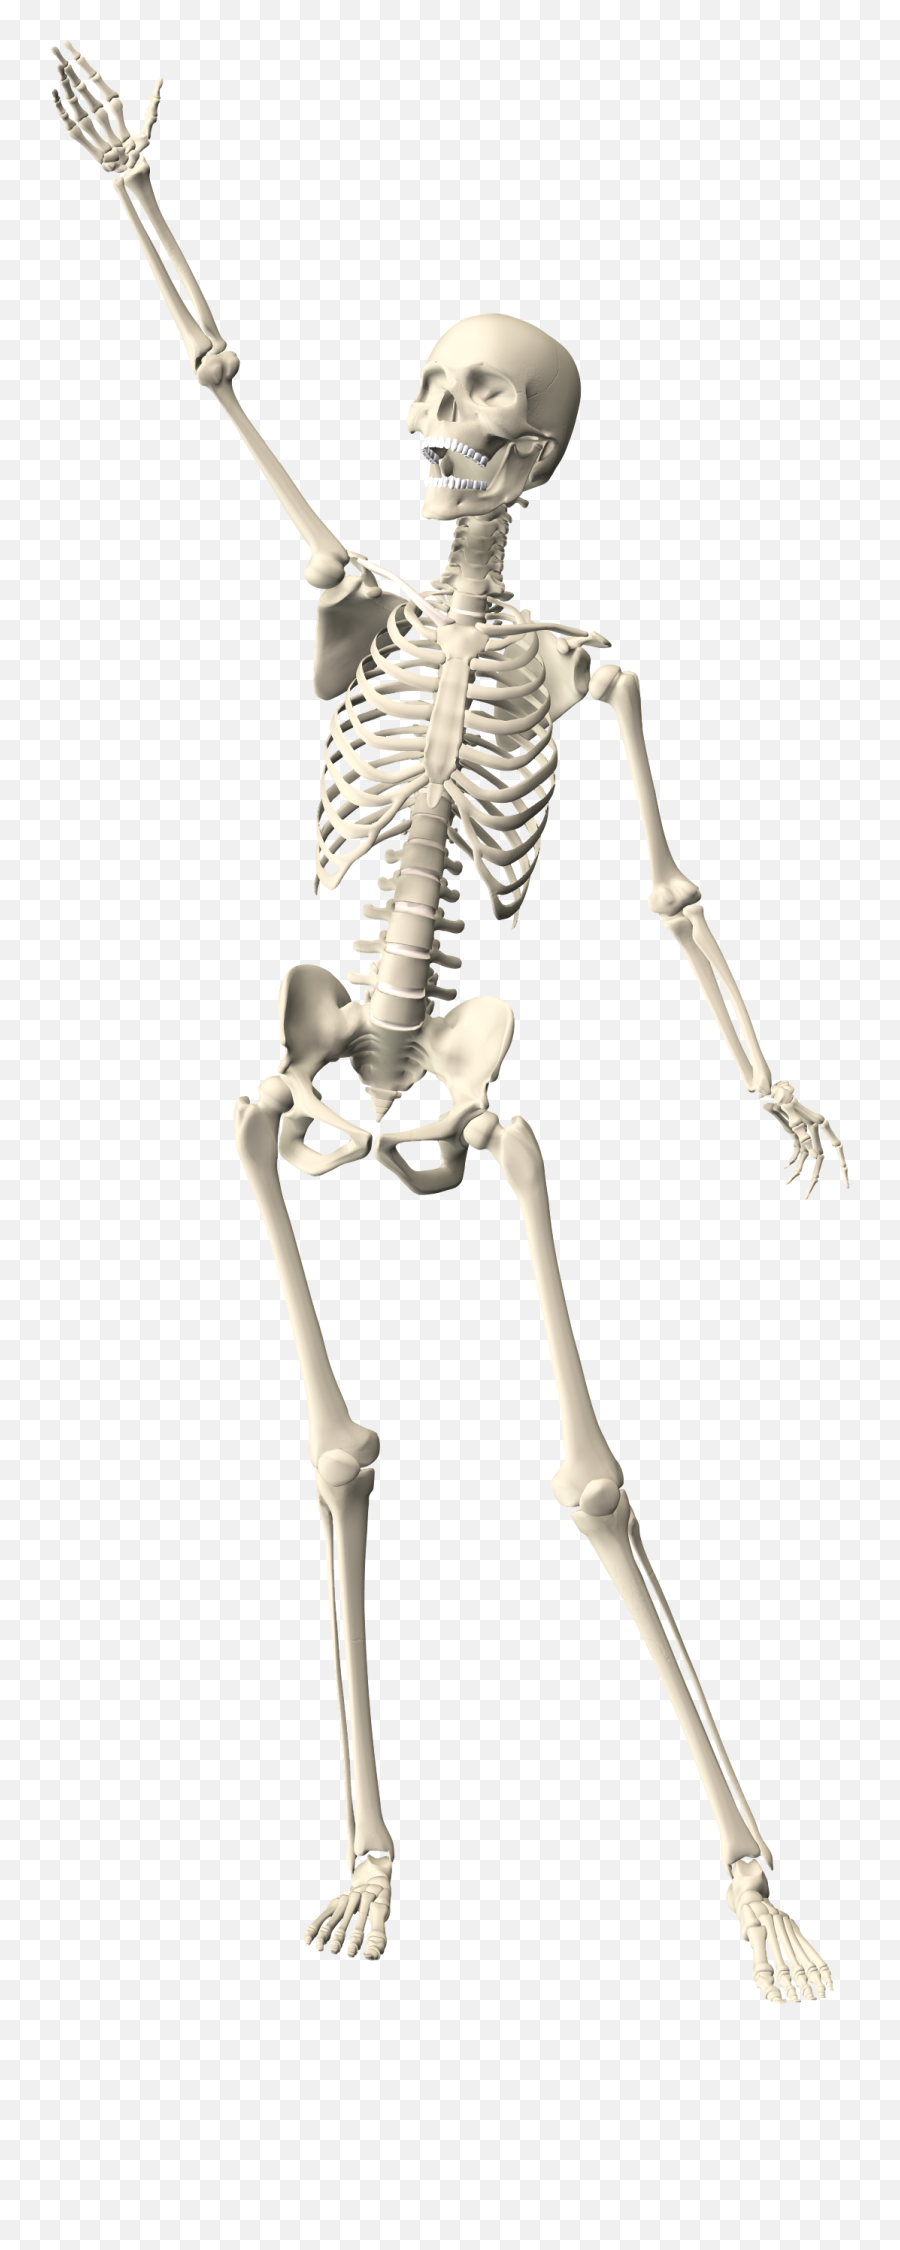 Drawn White Skeleton With Raised Hand Free Image Download - Skeleton Arms Raised Png,Skeleton Hand Icon